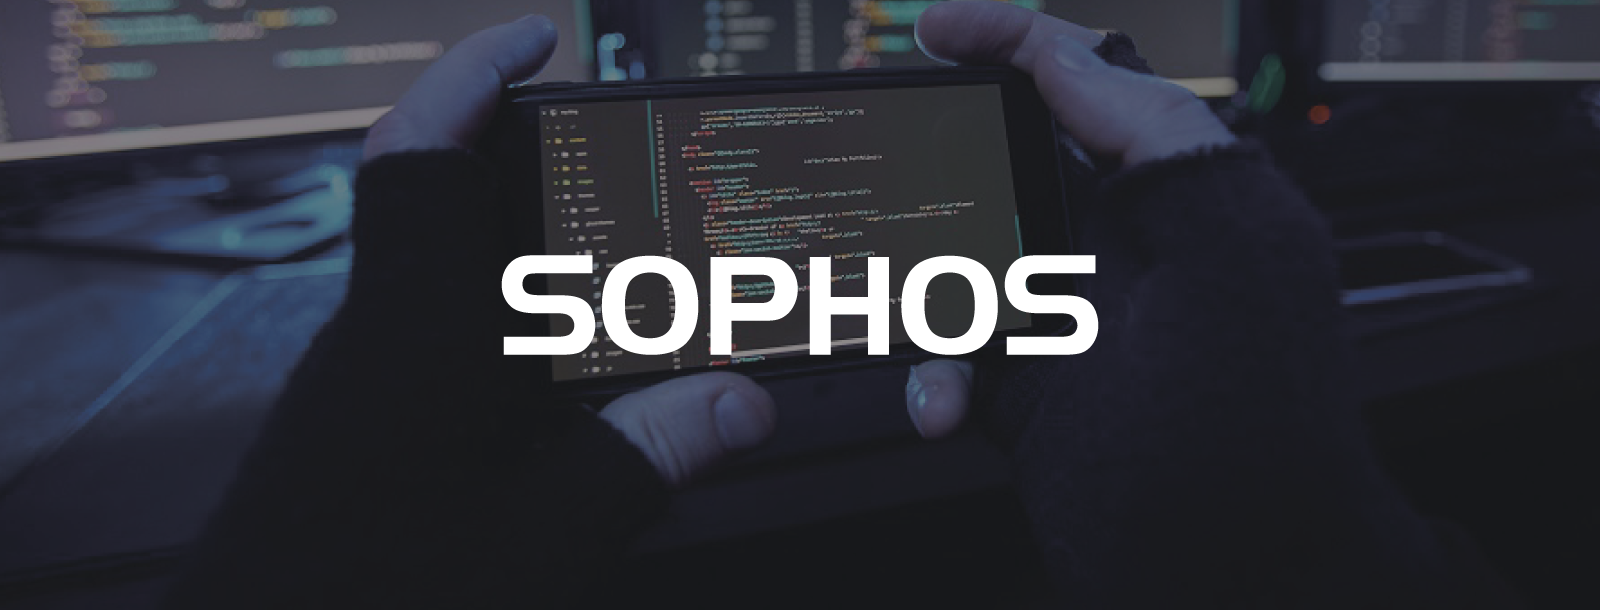 Raport Sophos: ponad 500 narzędzi i technik w arsenale cyberprzestępców